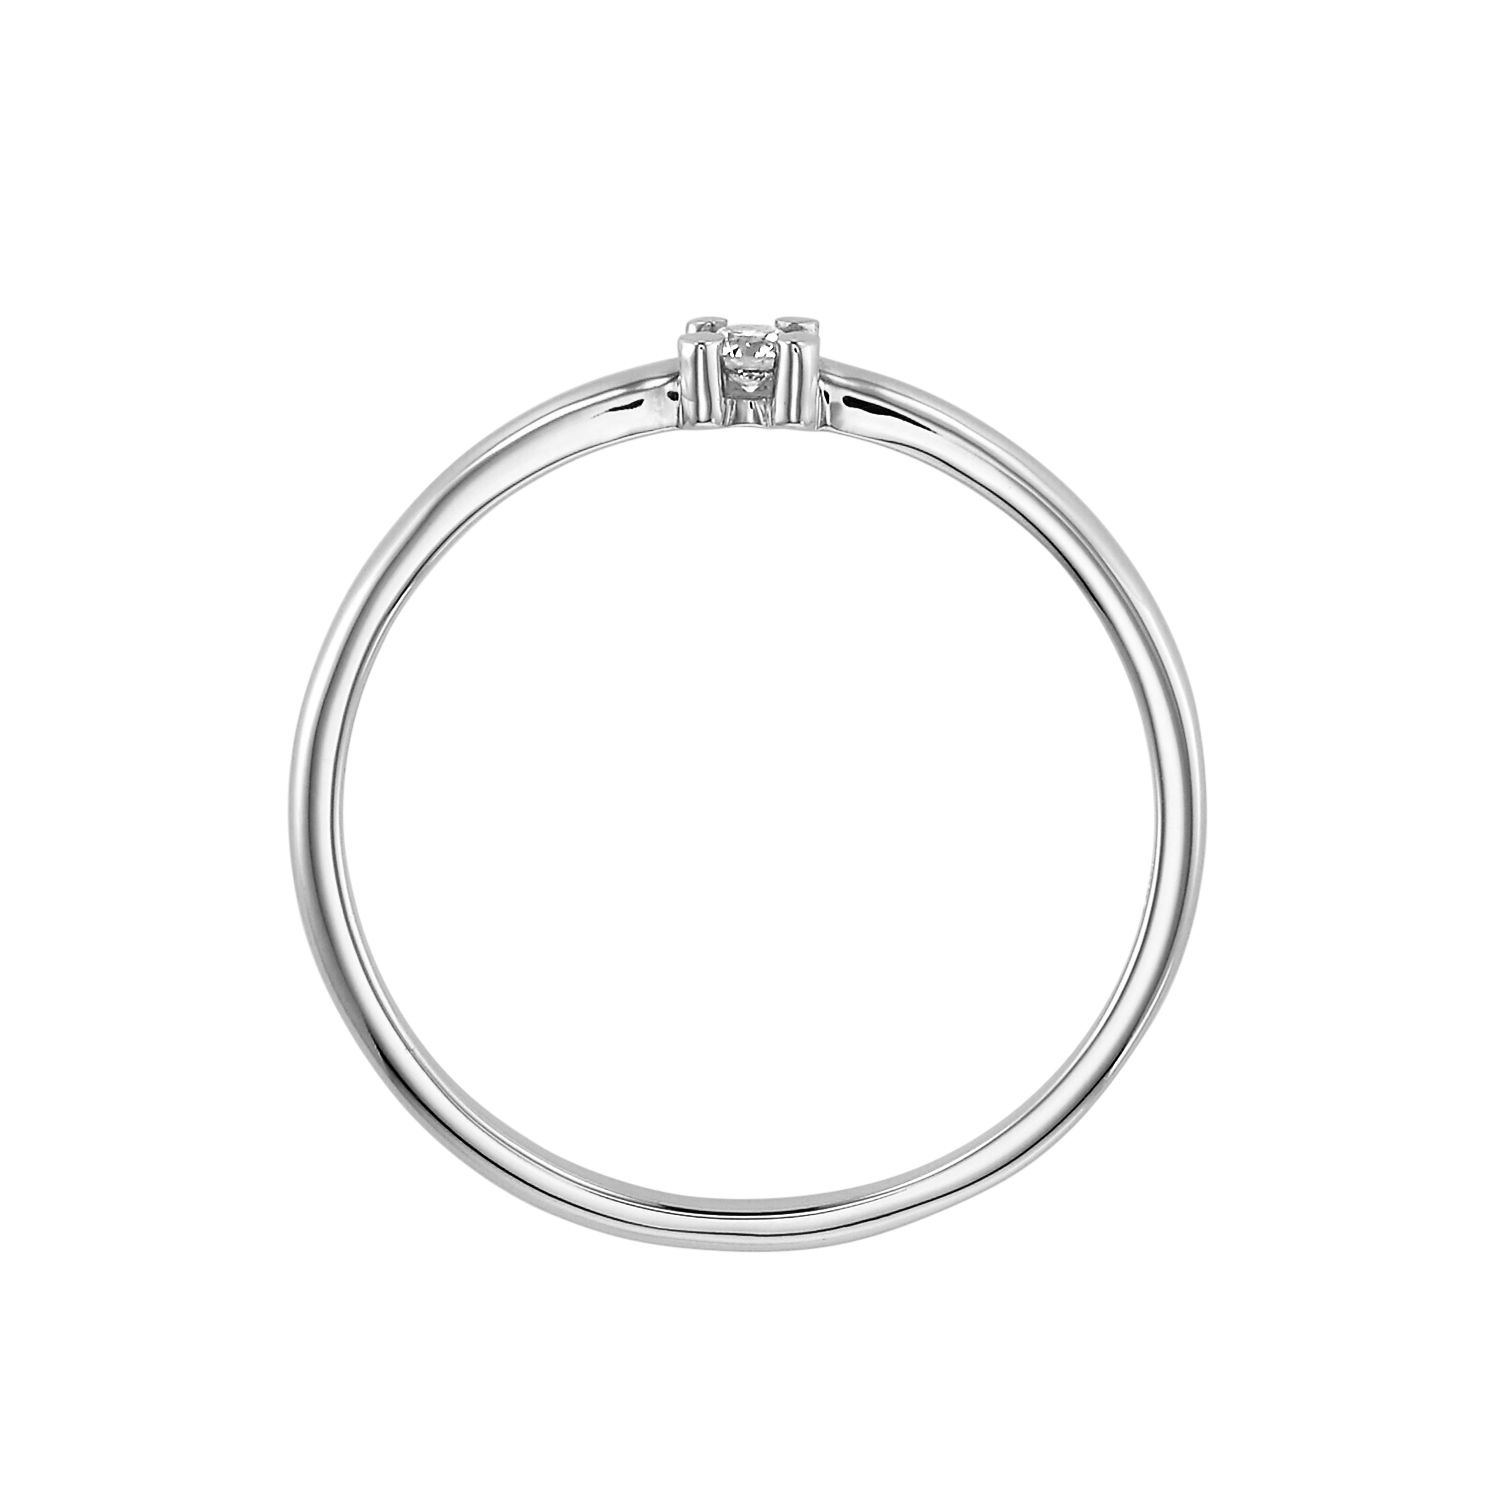 【ホワイトゴールド】リング [サンクチュアリデザイン]/Sanctuary Design Ring